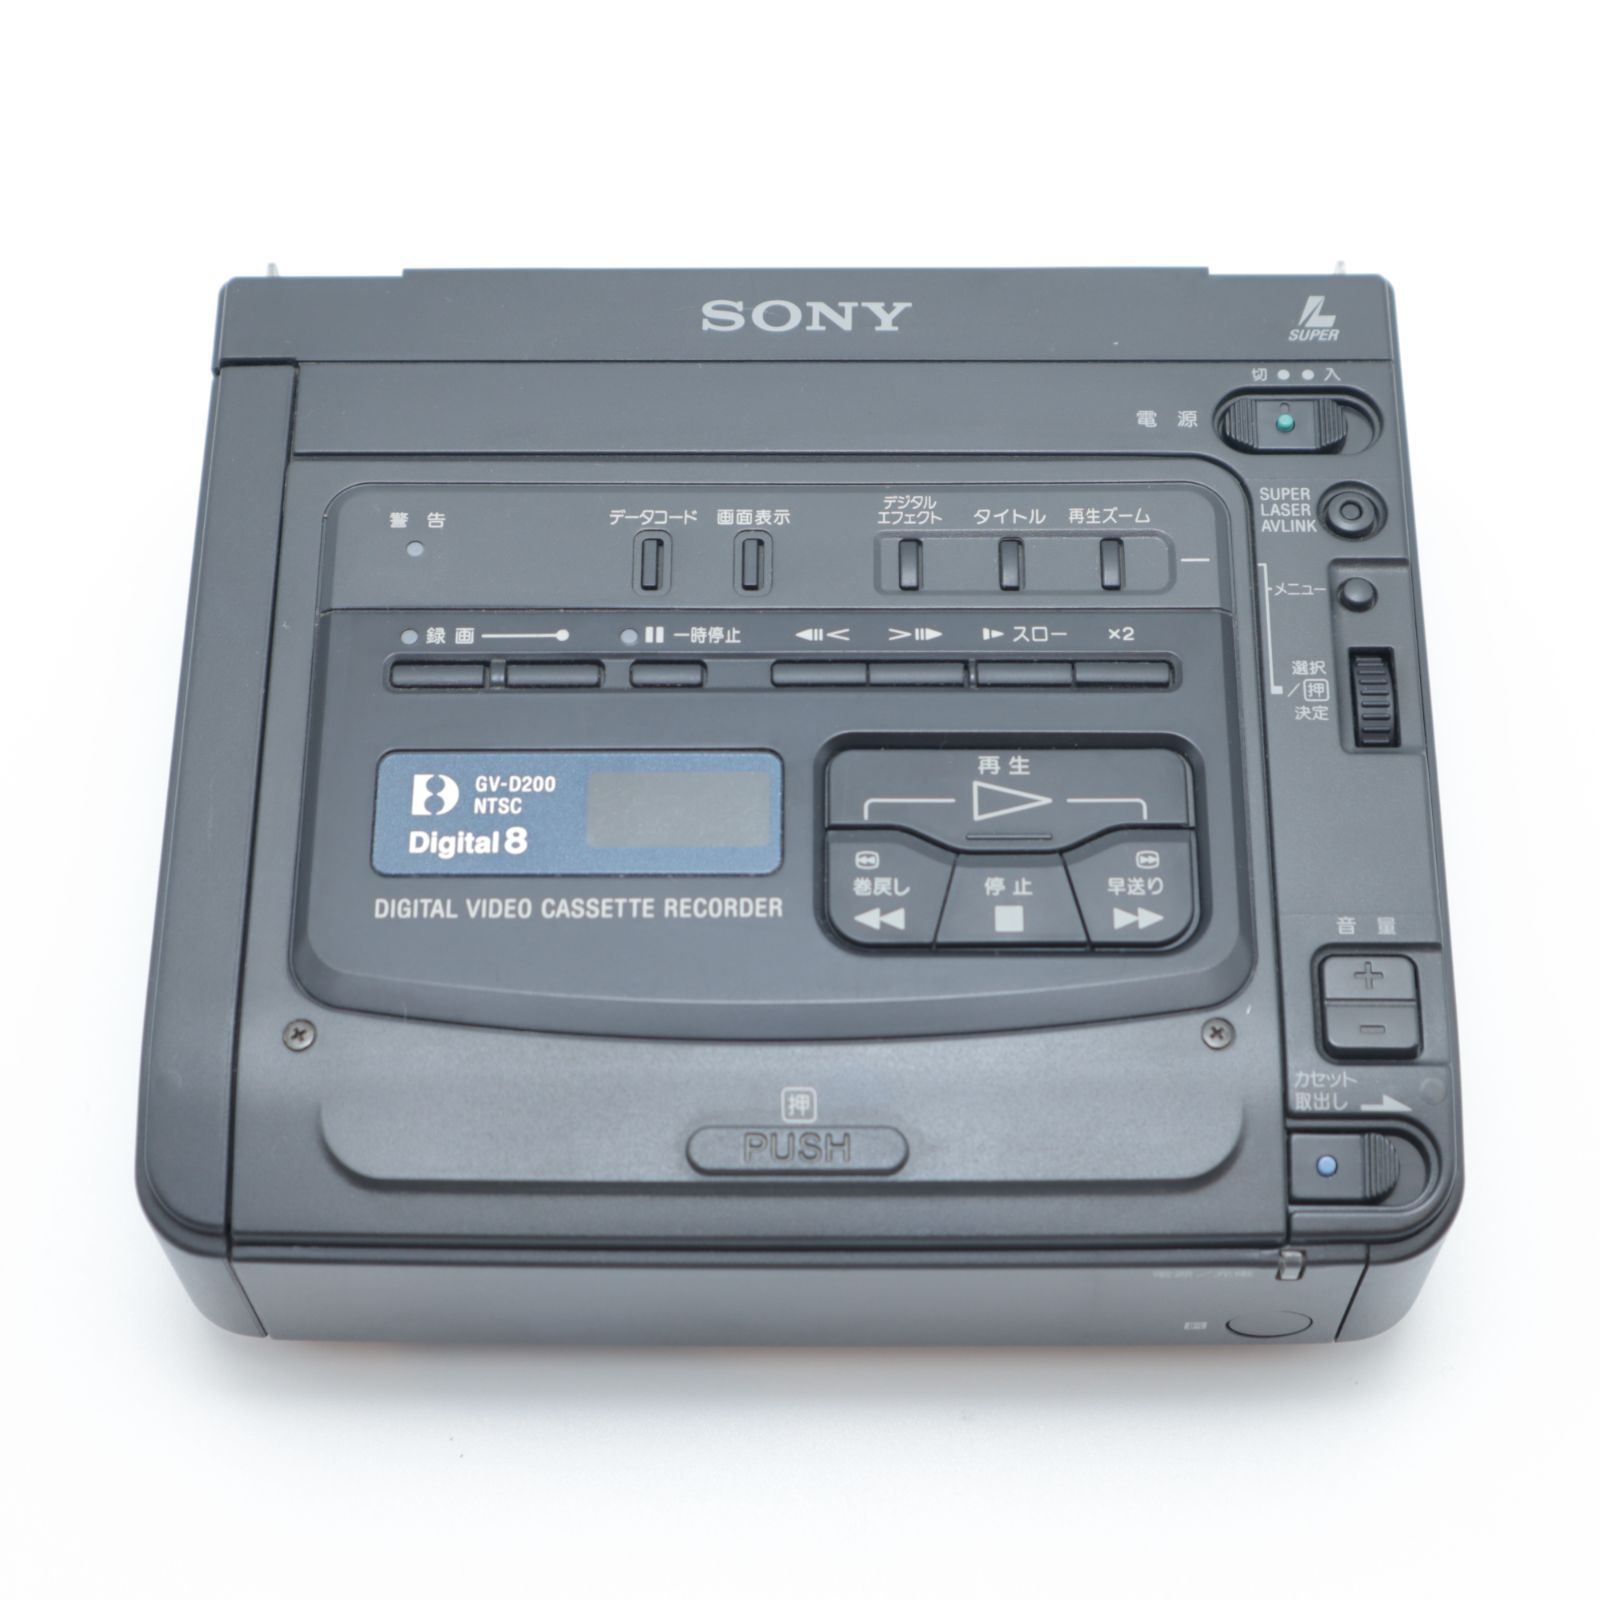 【新品】SONY デジタルビデオカセットレコーダー GV-D200